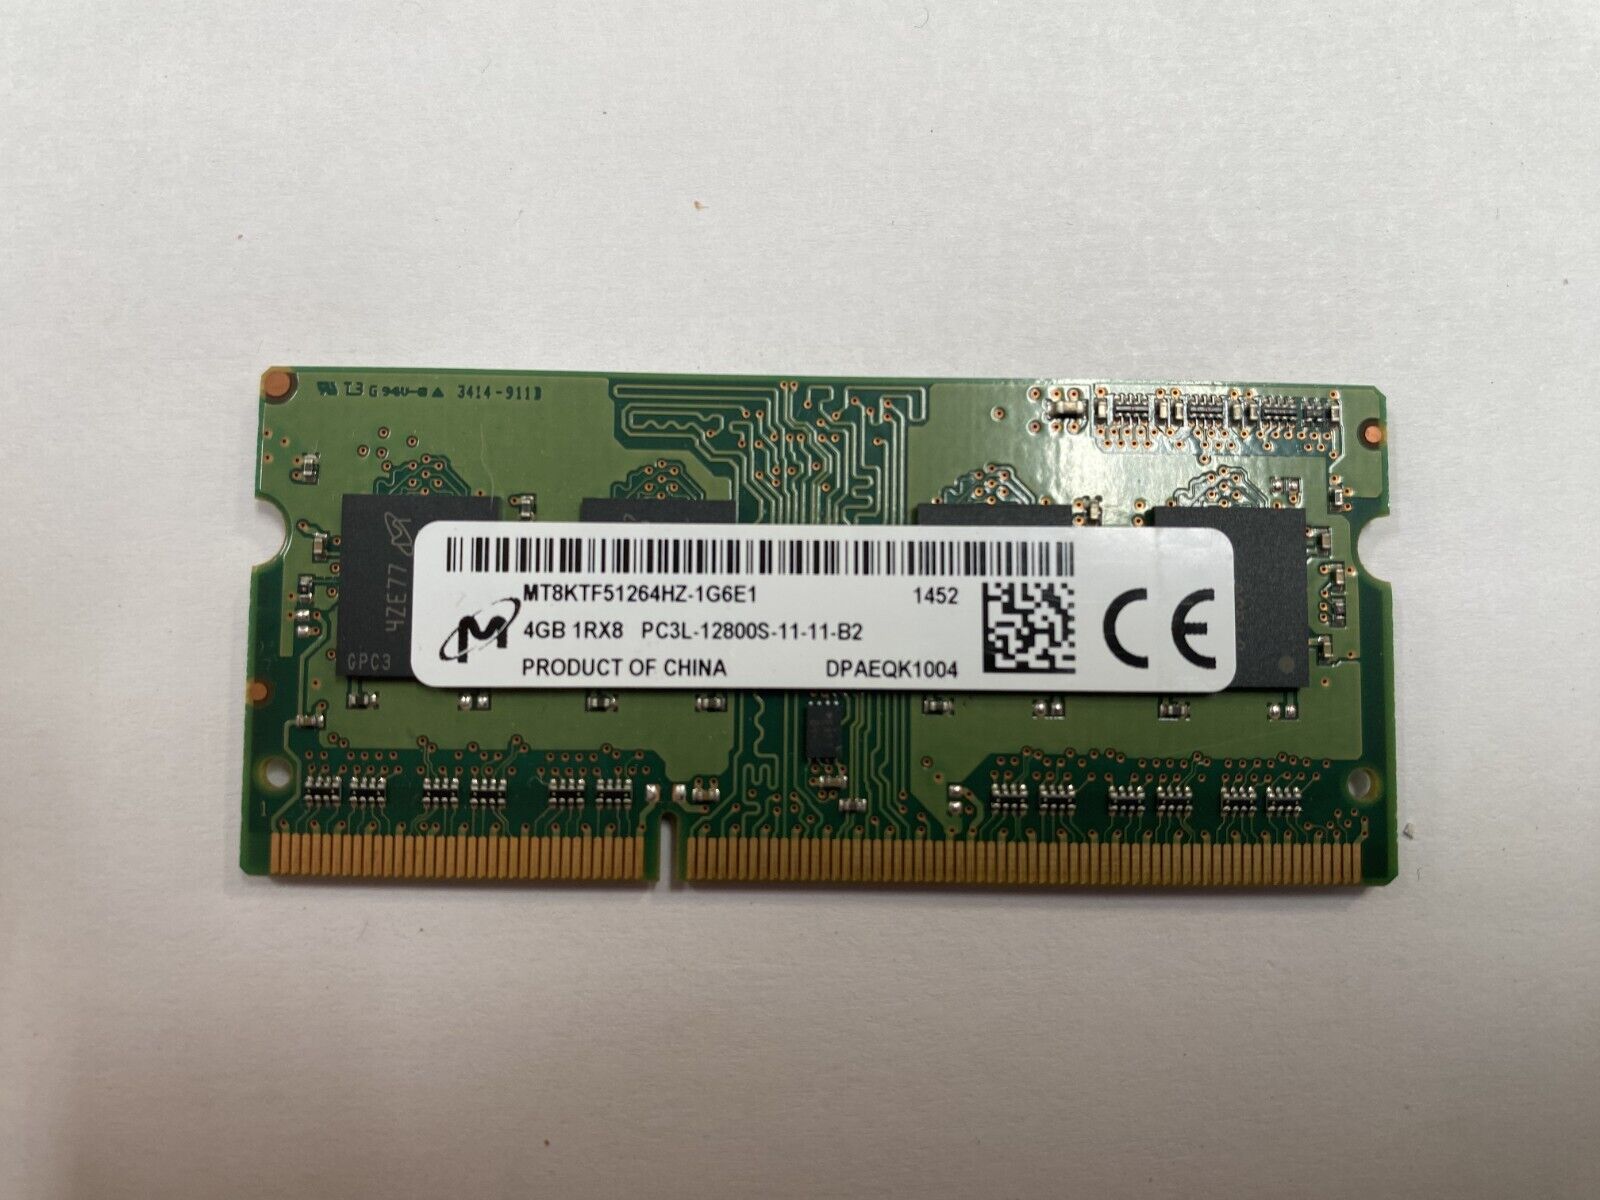 Micron 8GB (4GB x2) 1Rx8 PC3L-12800S-11-11-B2 MT8KTF51264HZ-1G6E1